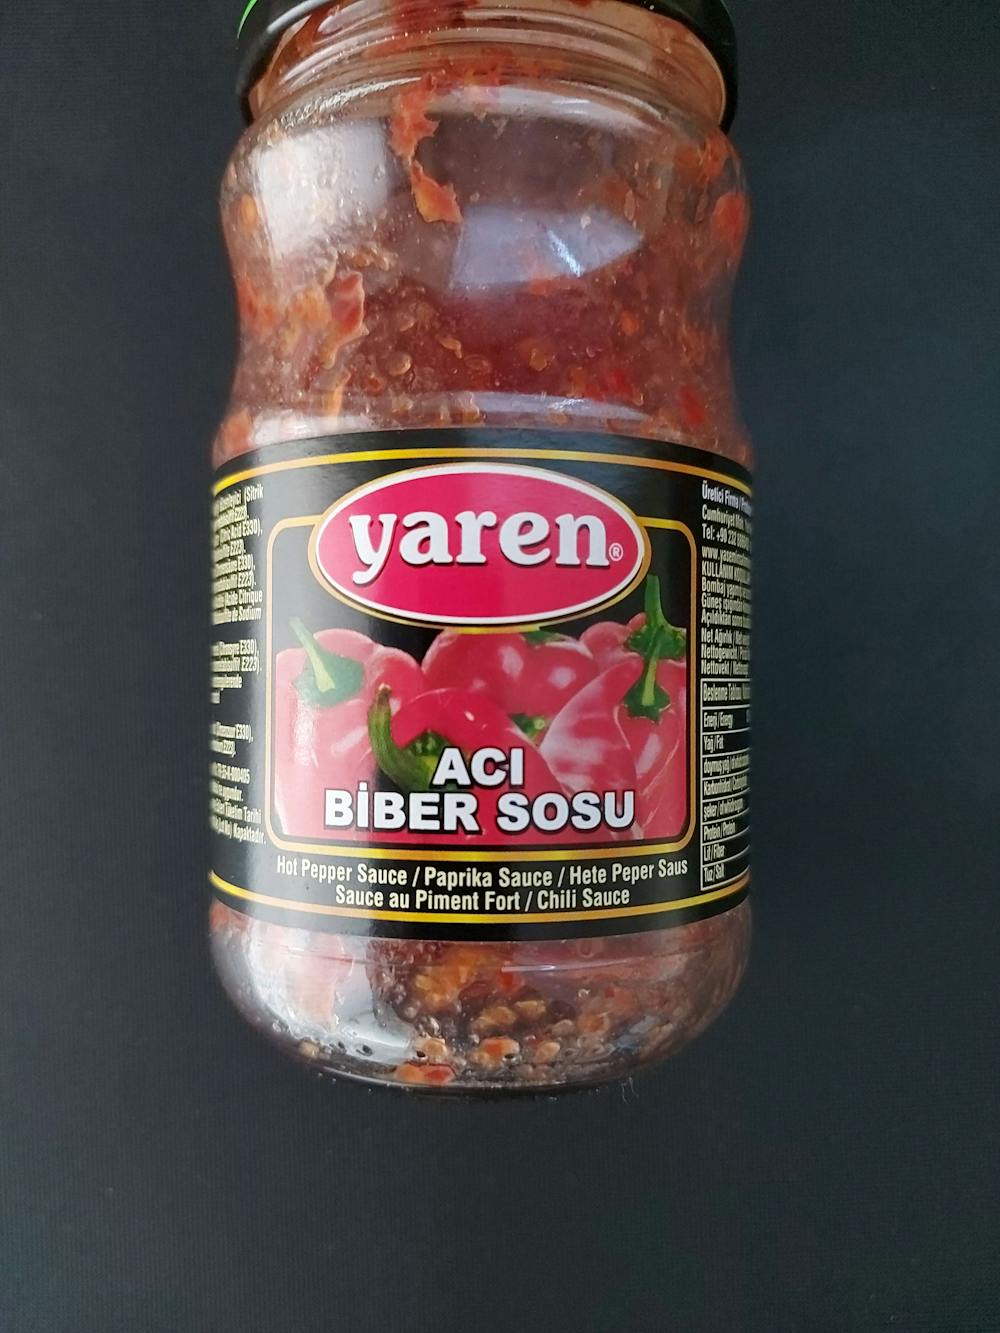 Aci biber sosu, Yaren